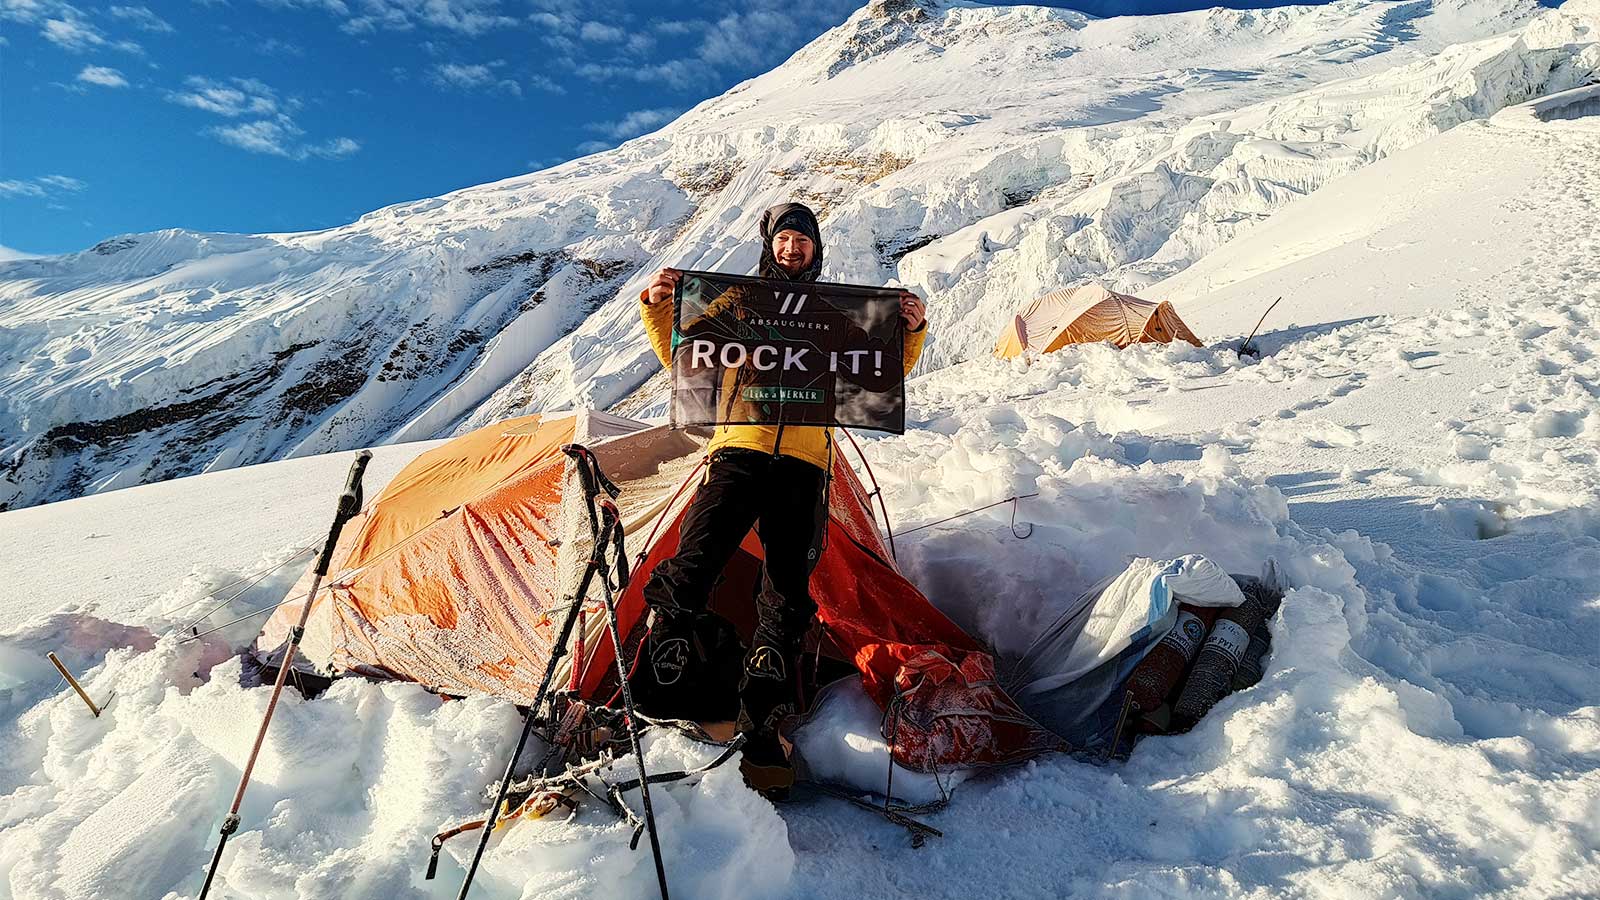 Bergsteiger steht vor Zelt im Schnee auf Manaslu und hält Fahne hoch mit der Aufschrift "Rock it"